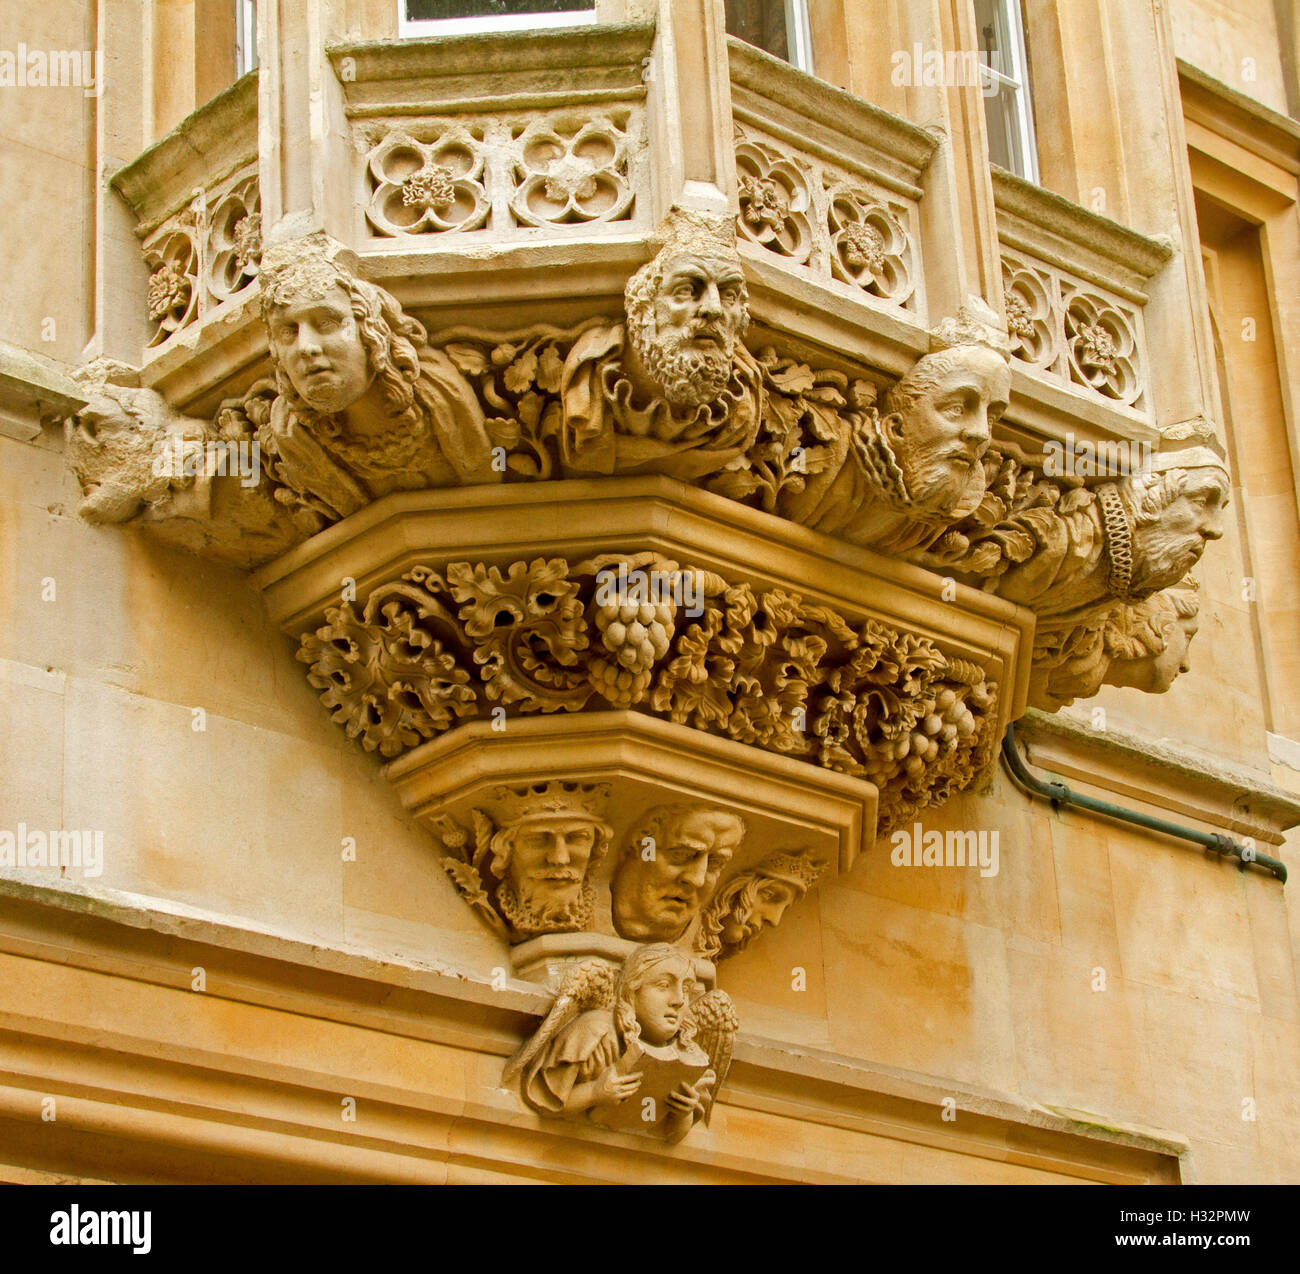 De style gothique ornée travail sculptural sur l'appui de fenêtre en baie du bâtiment historique de Pembroke College à Oxford England UK Banque D'Images